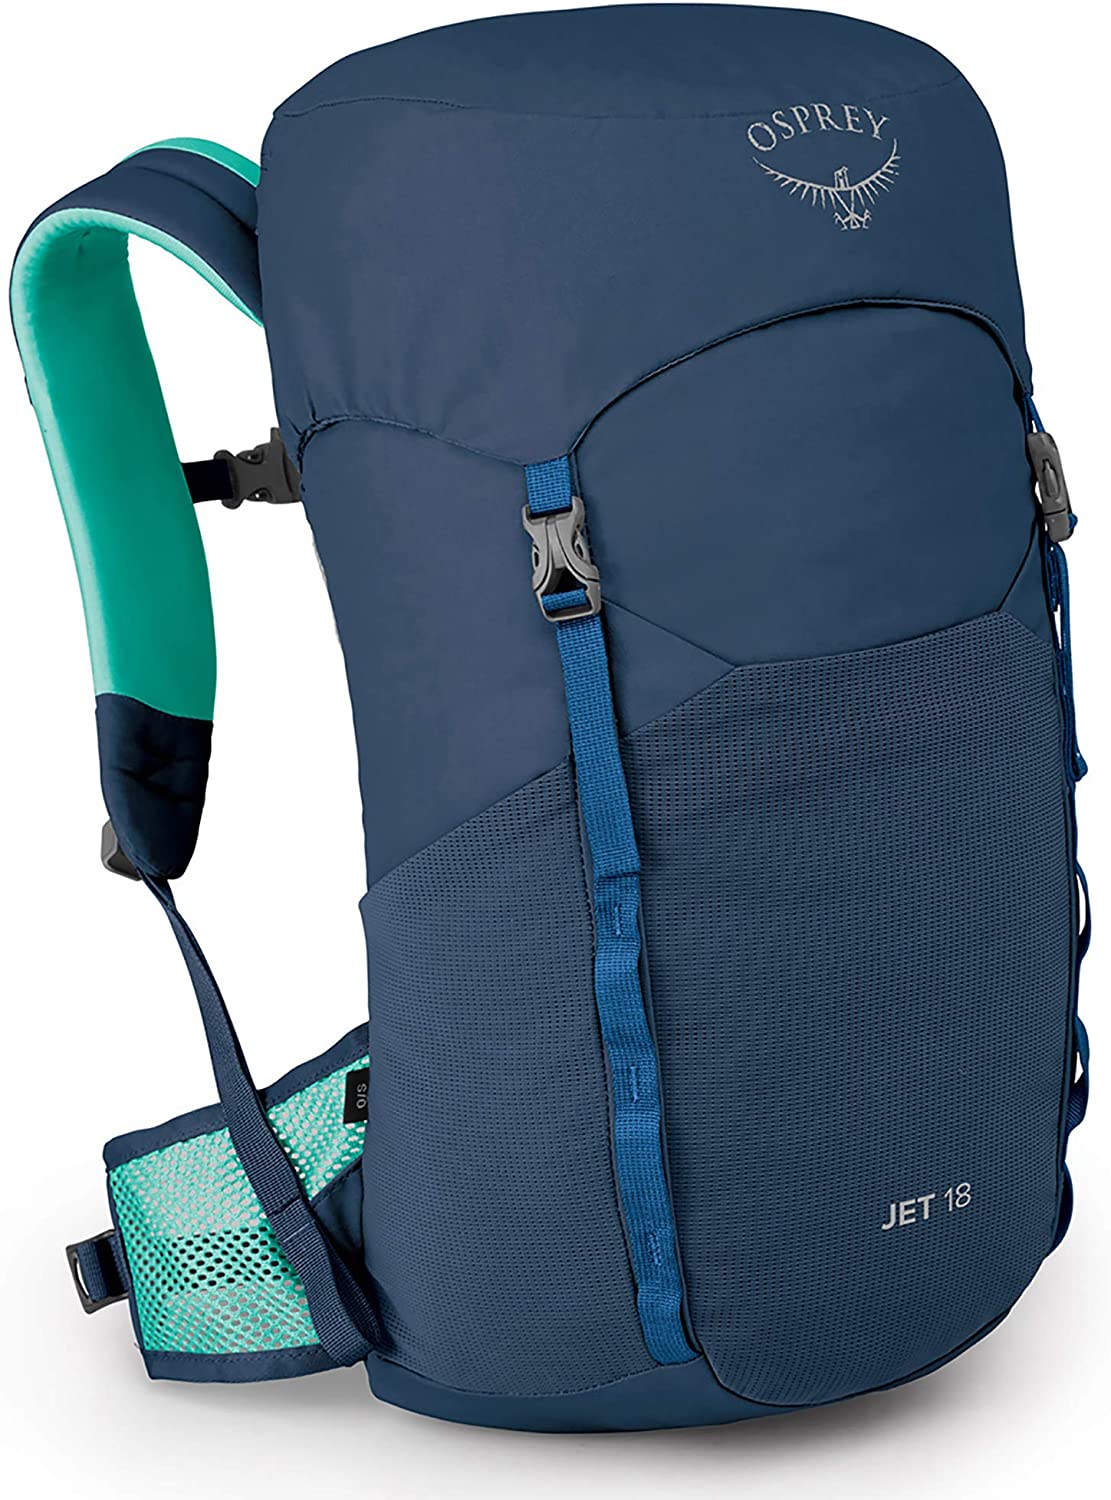 Best Day Hiking Backpack for Kids - Osprey Jet 18 